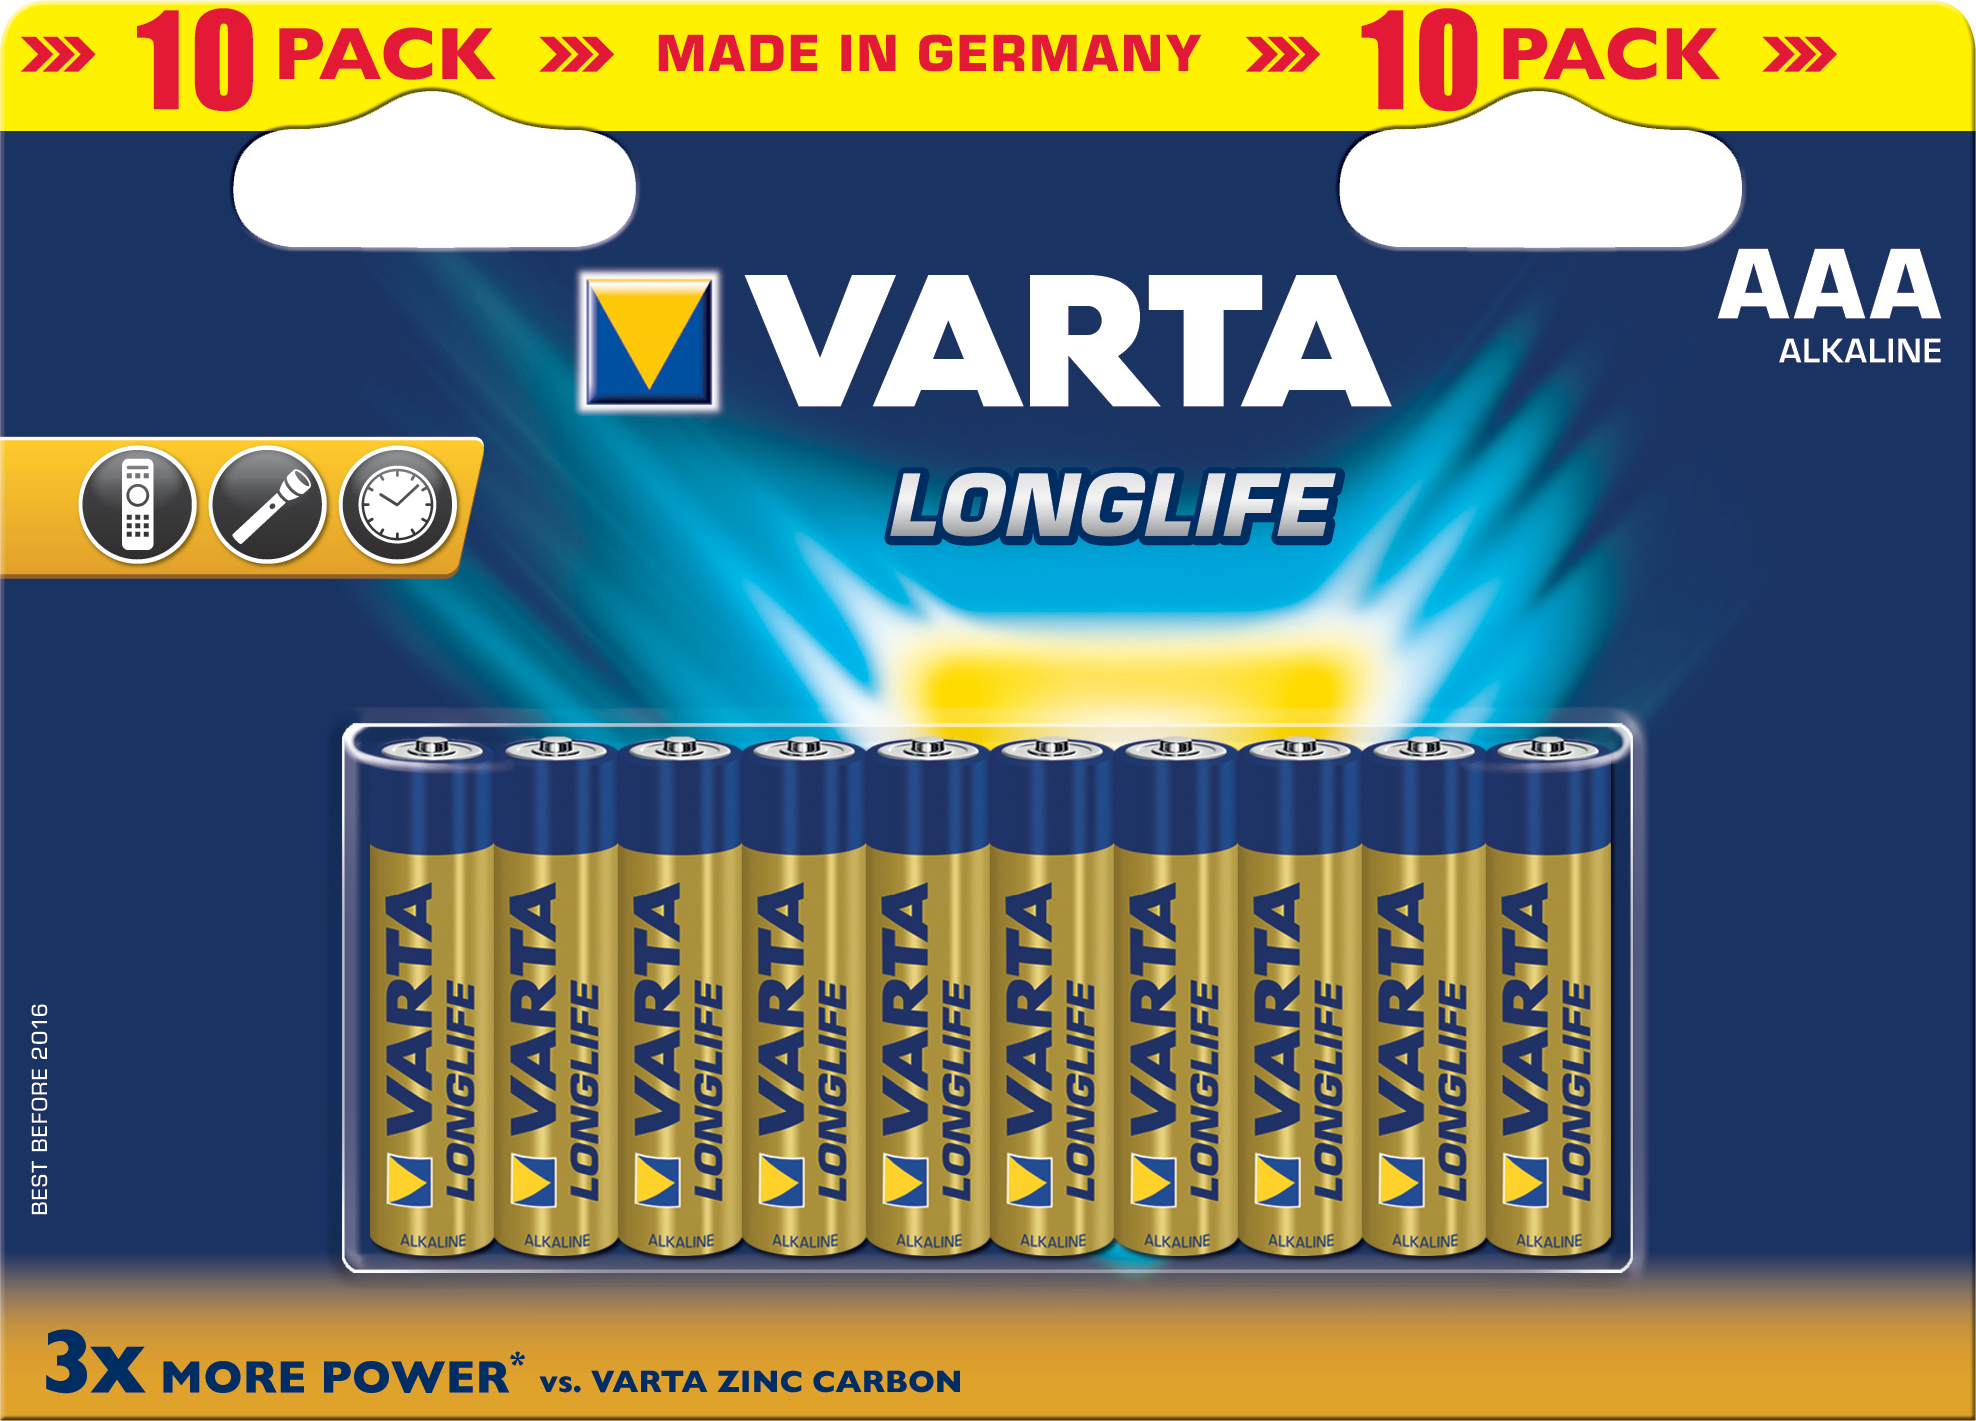 Varta LongLife AAA 10x